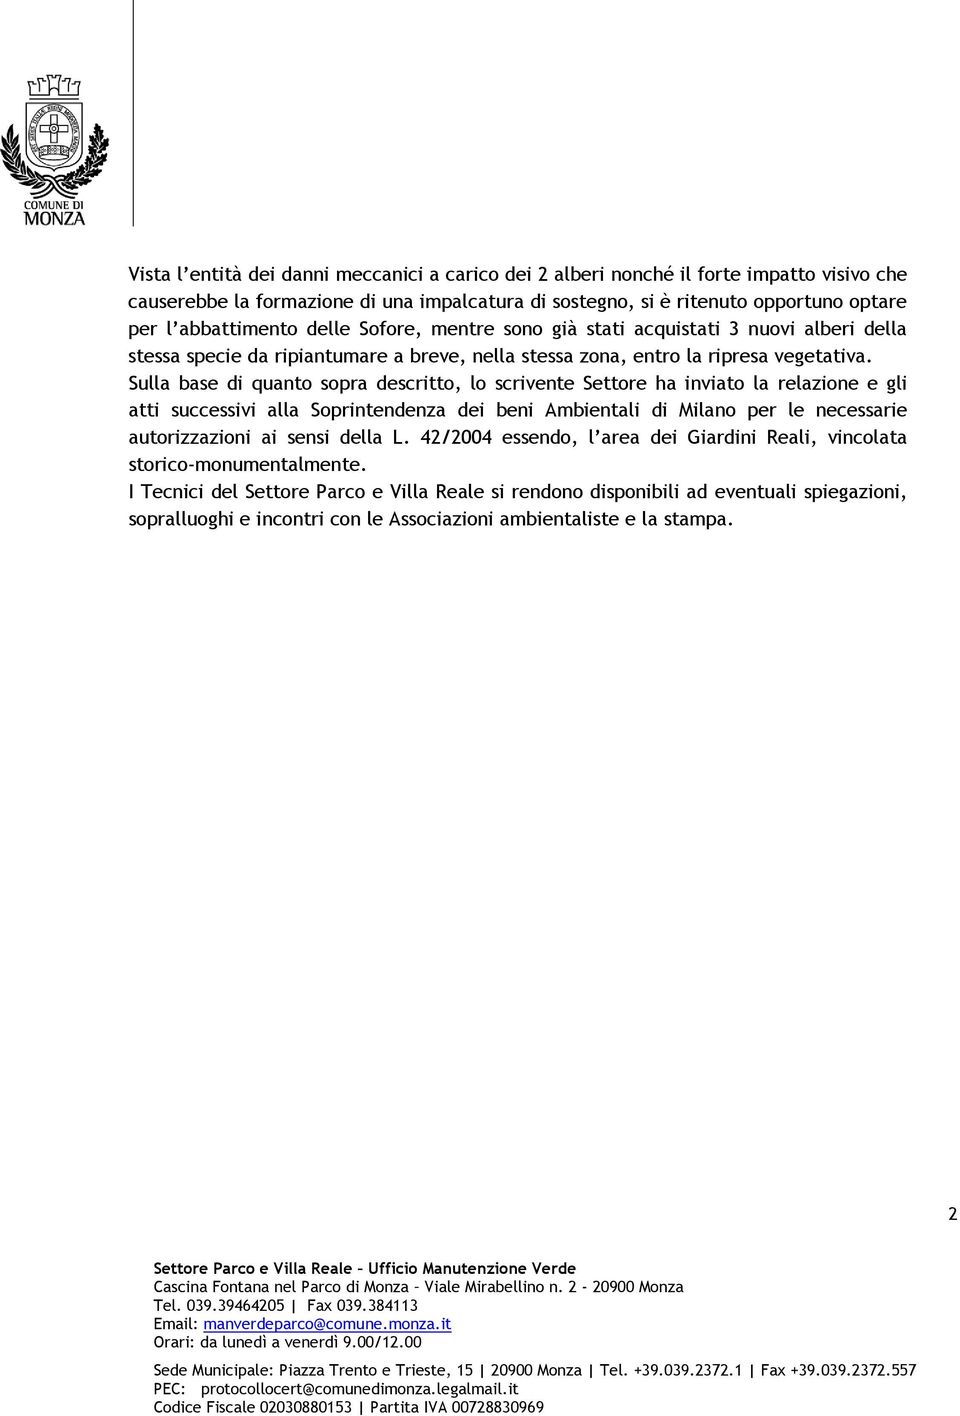 Sulla base di quanto sopra descritto, lo scrivente Settore ha inviato la relazione e gli atti successivi alla Soprintendenza dei beni Ambientali di Milano per le necessarie autorizzazioni ai sensi